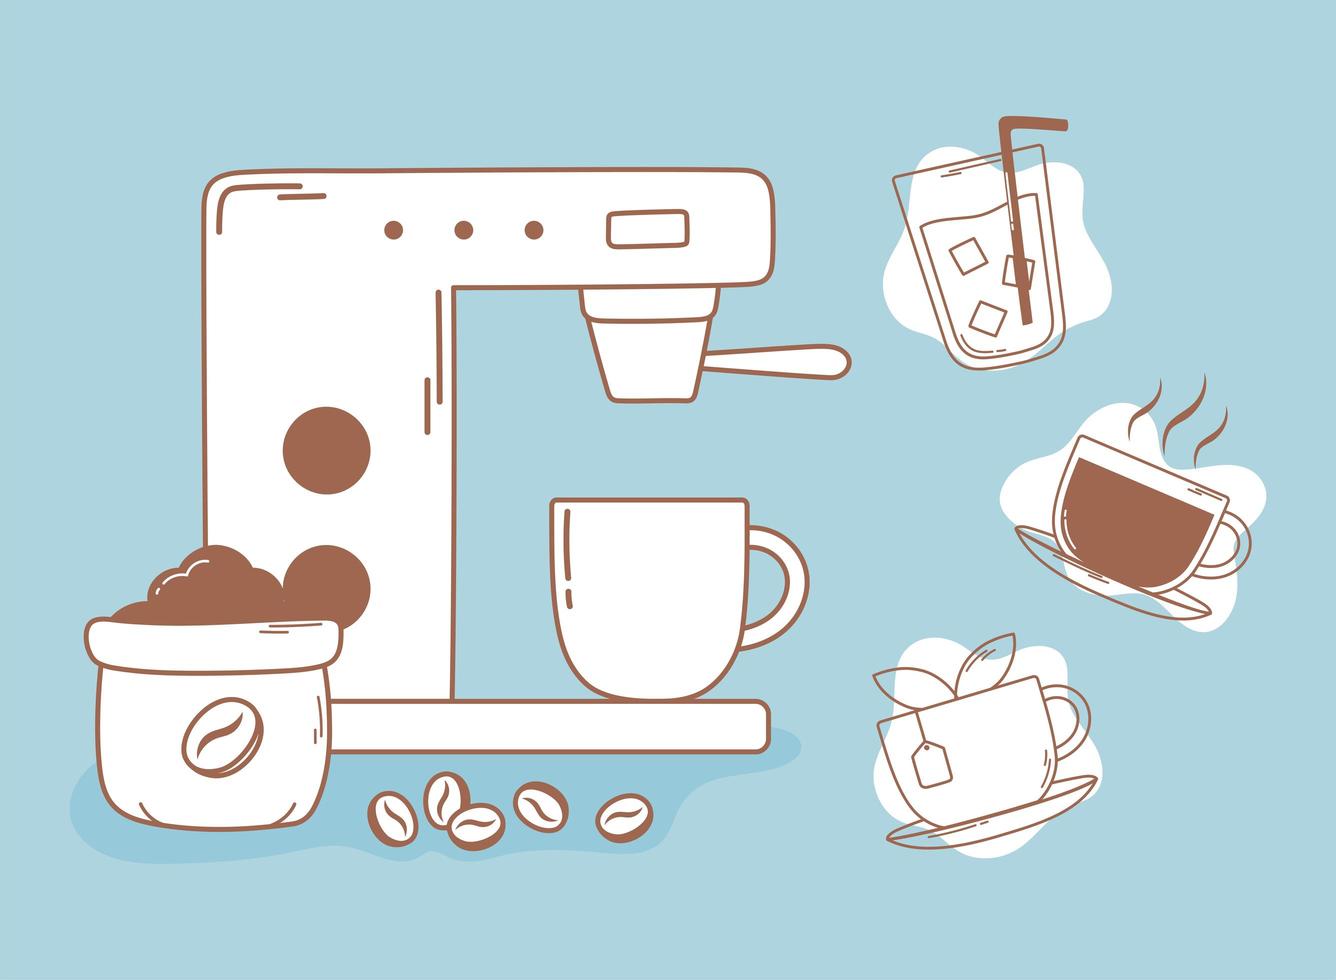 Kaffee Espressomaschine Getreide Tee und Tasse anrichten und einfüllen vektor